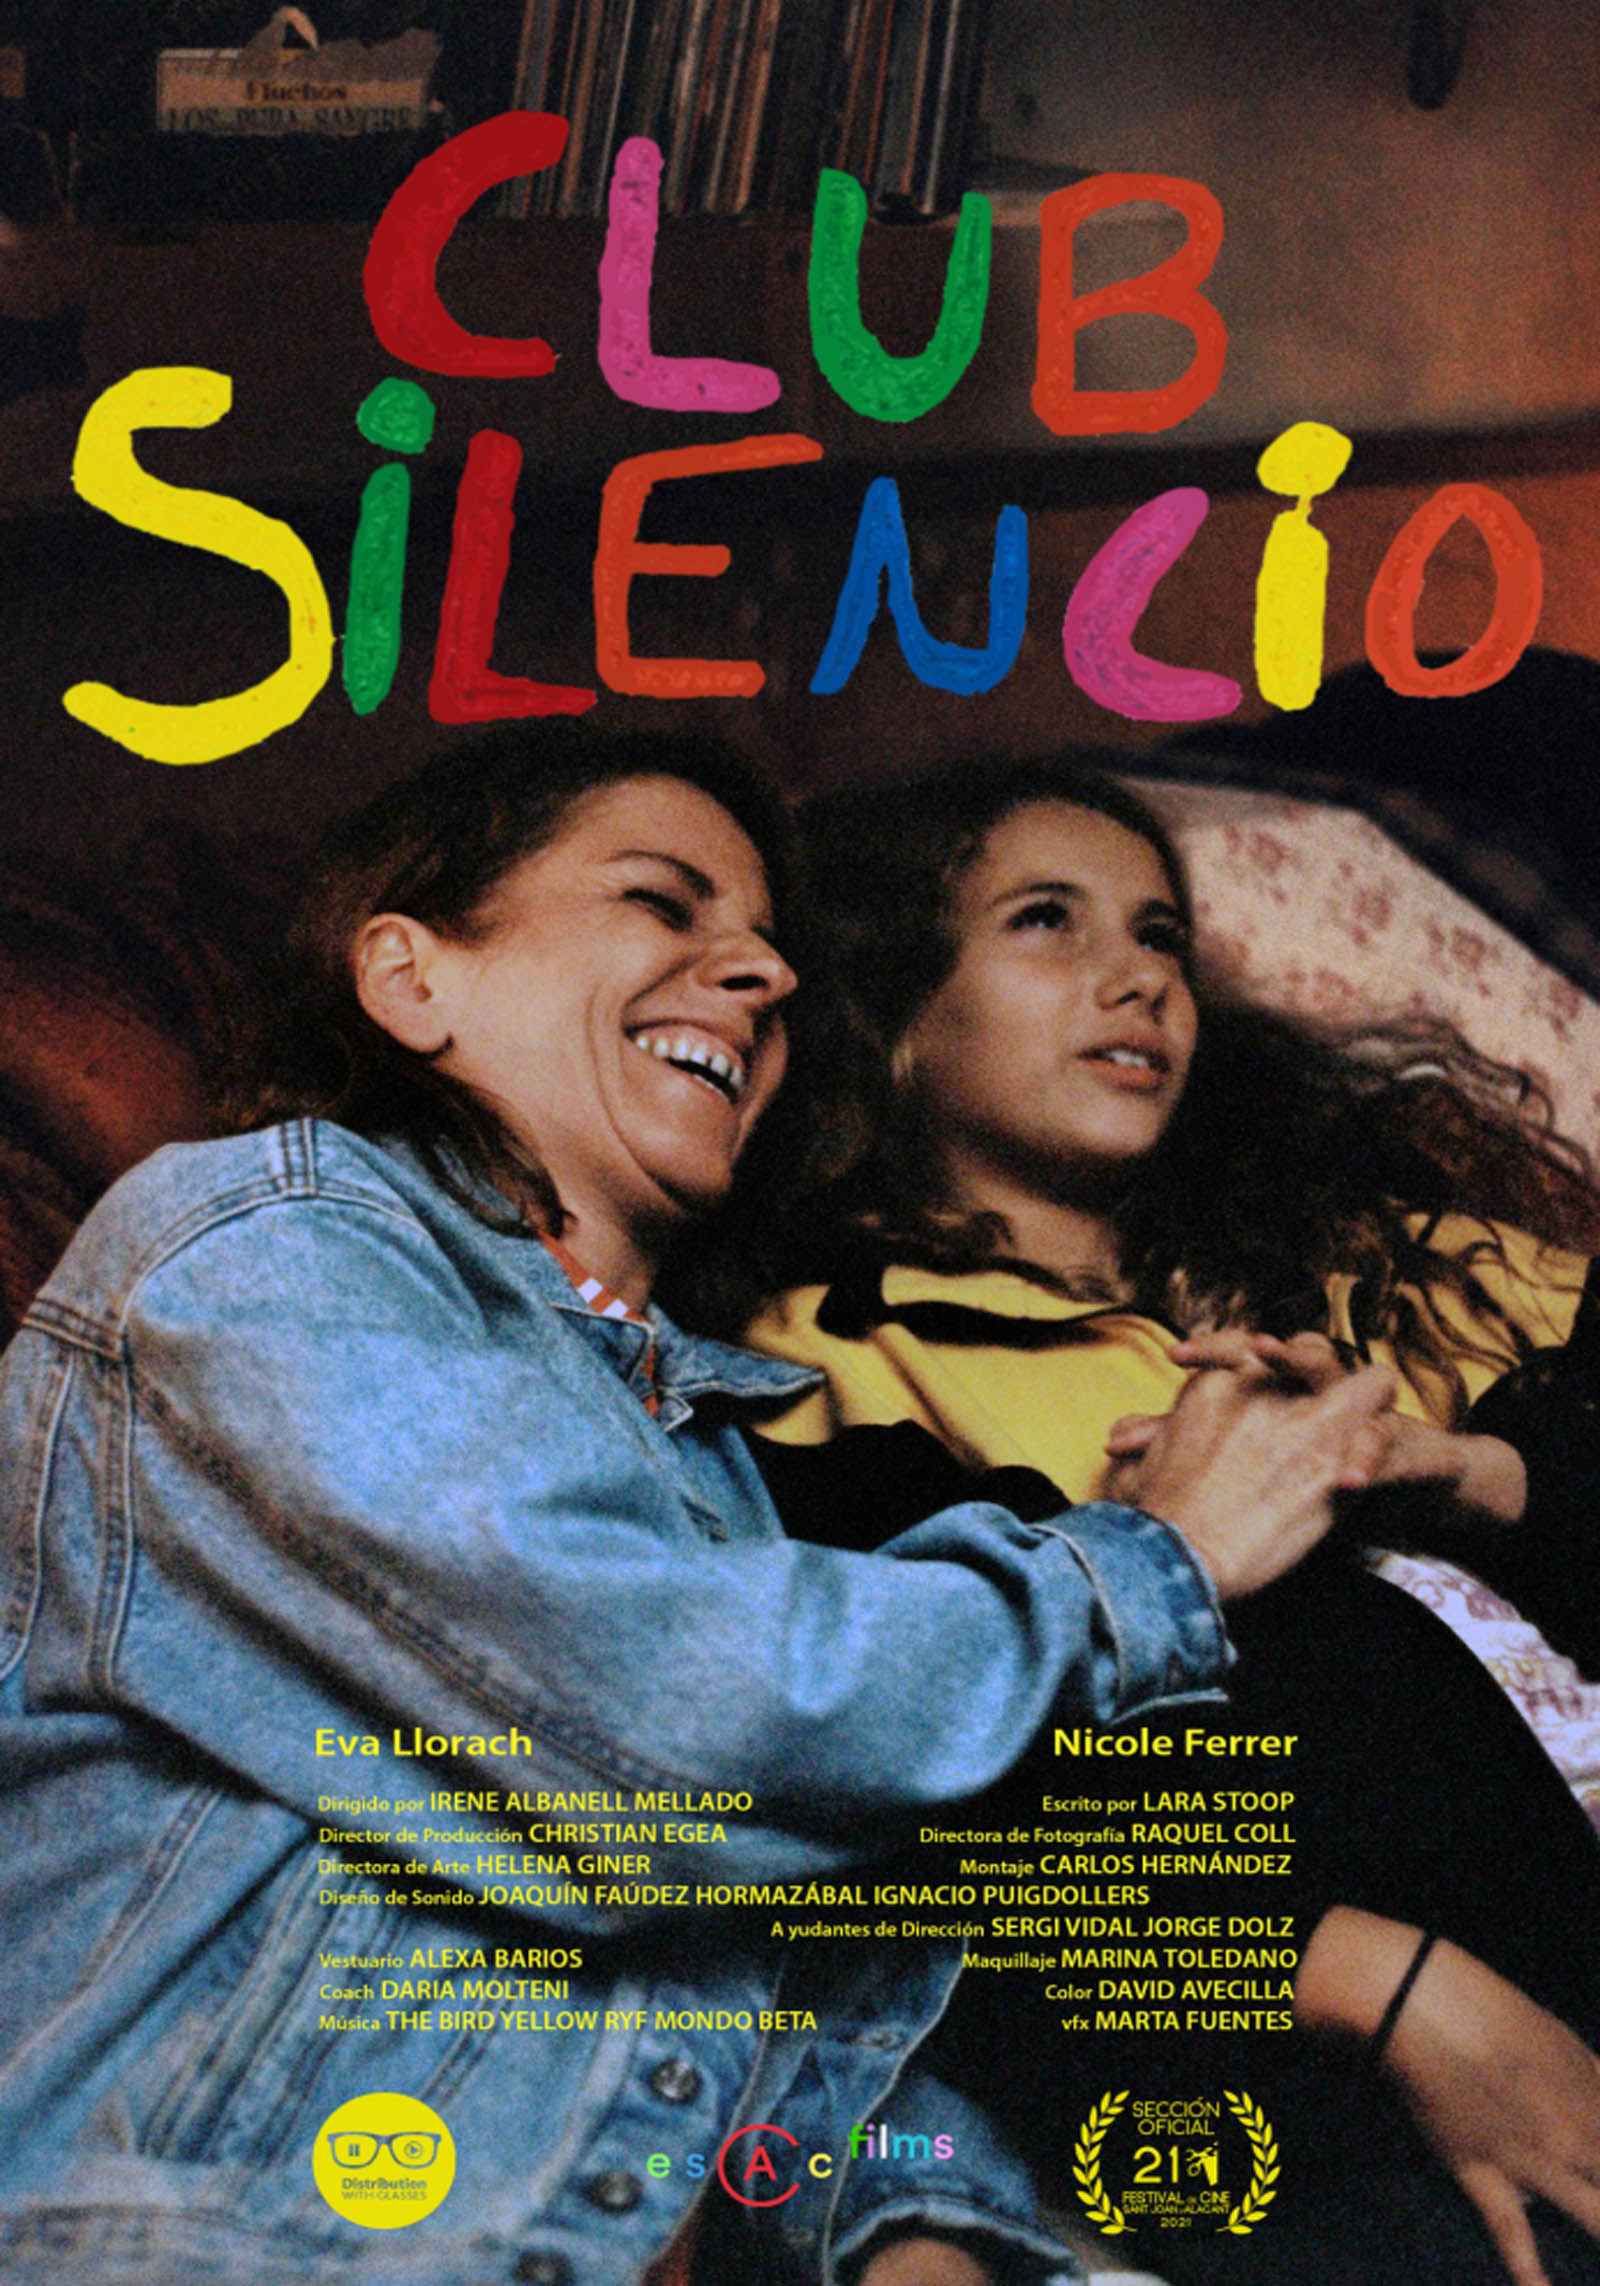 Cartel Cortometraje Club Silencio, dirigido por Irene Albanell